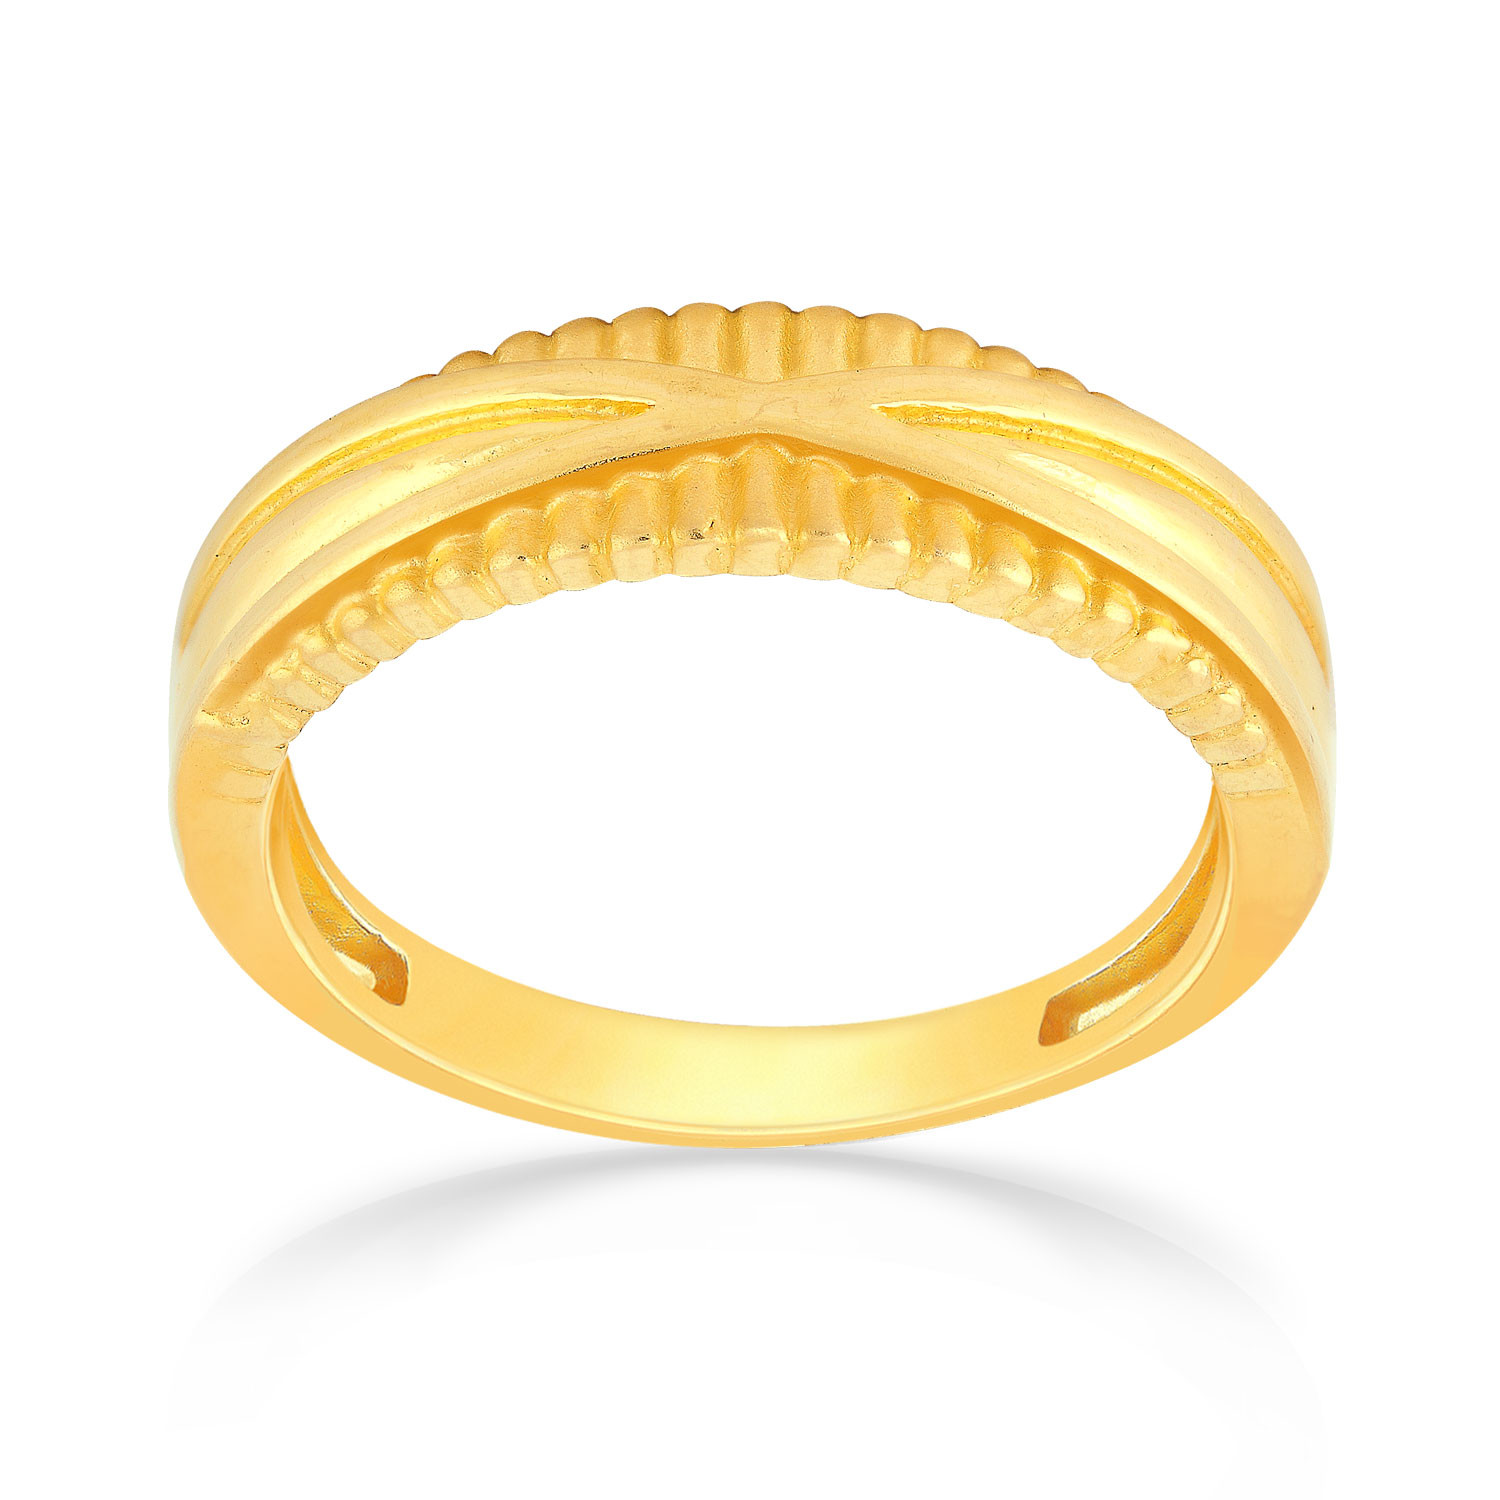 Buy Malabar Gold Ring MHAAAAAAEOPN for Women Online | Malabar Gold ...